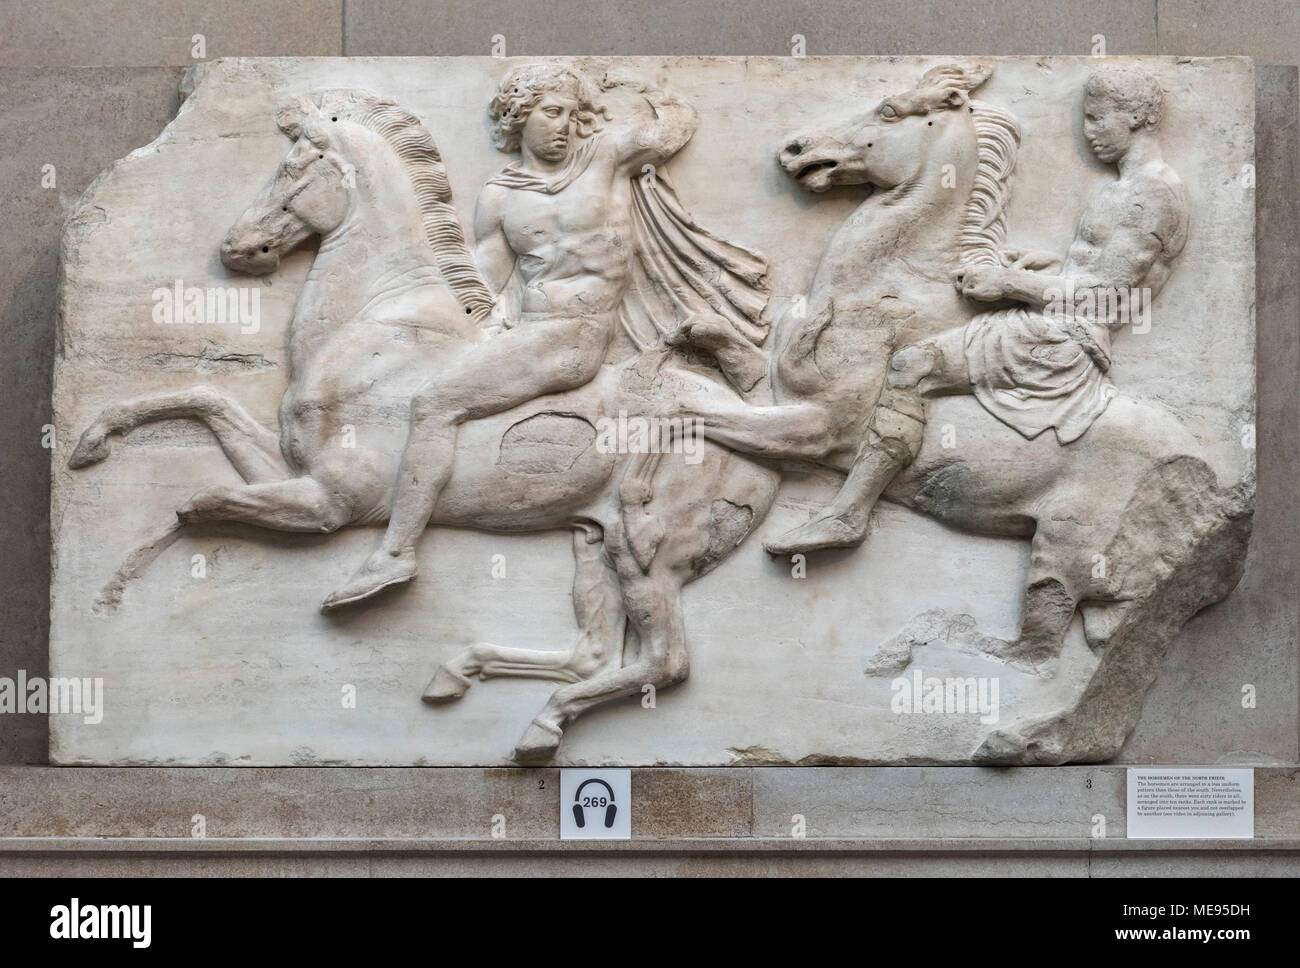 Londres. L'Angleterre. British Museum, frise du Parthénon (Parthénon), deux cavaliers de l'Ouest, frise du Parthénon sur l'Acropole à Athènes, c Banque D'Images